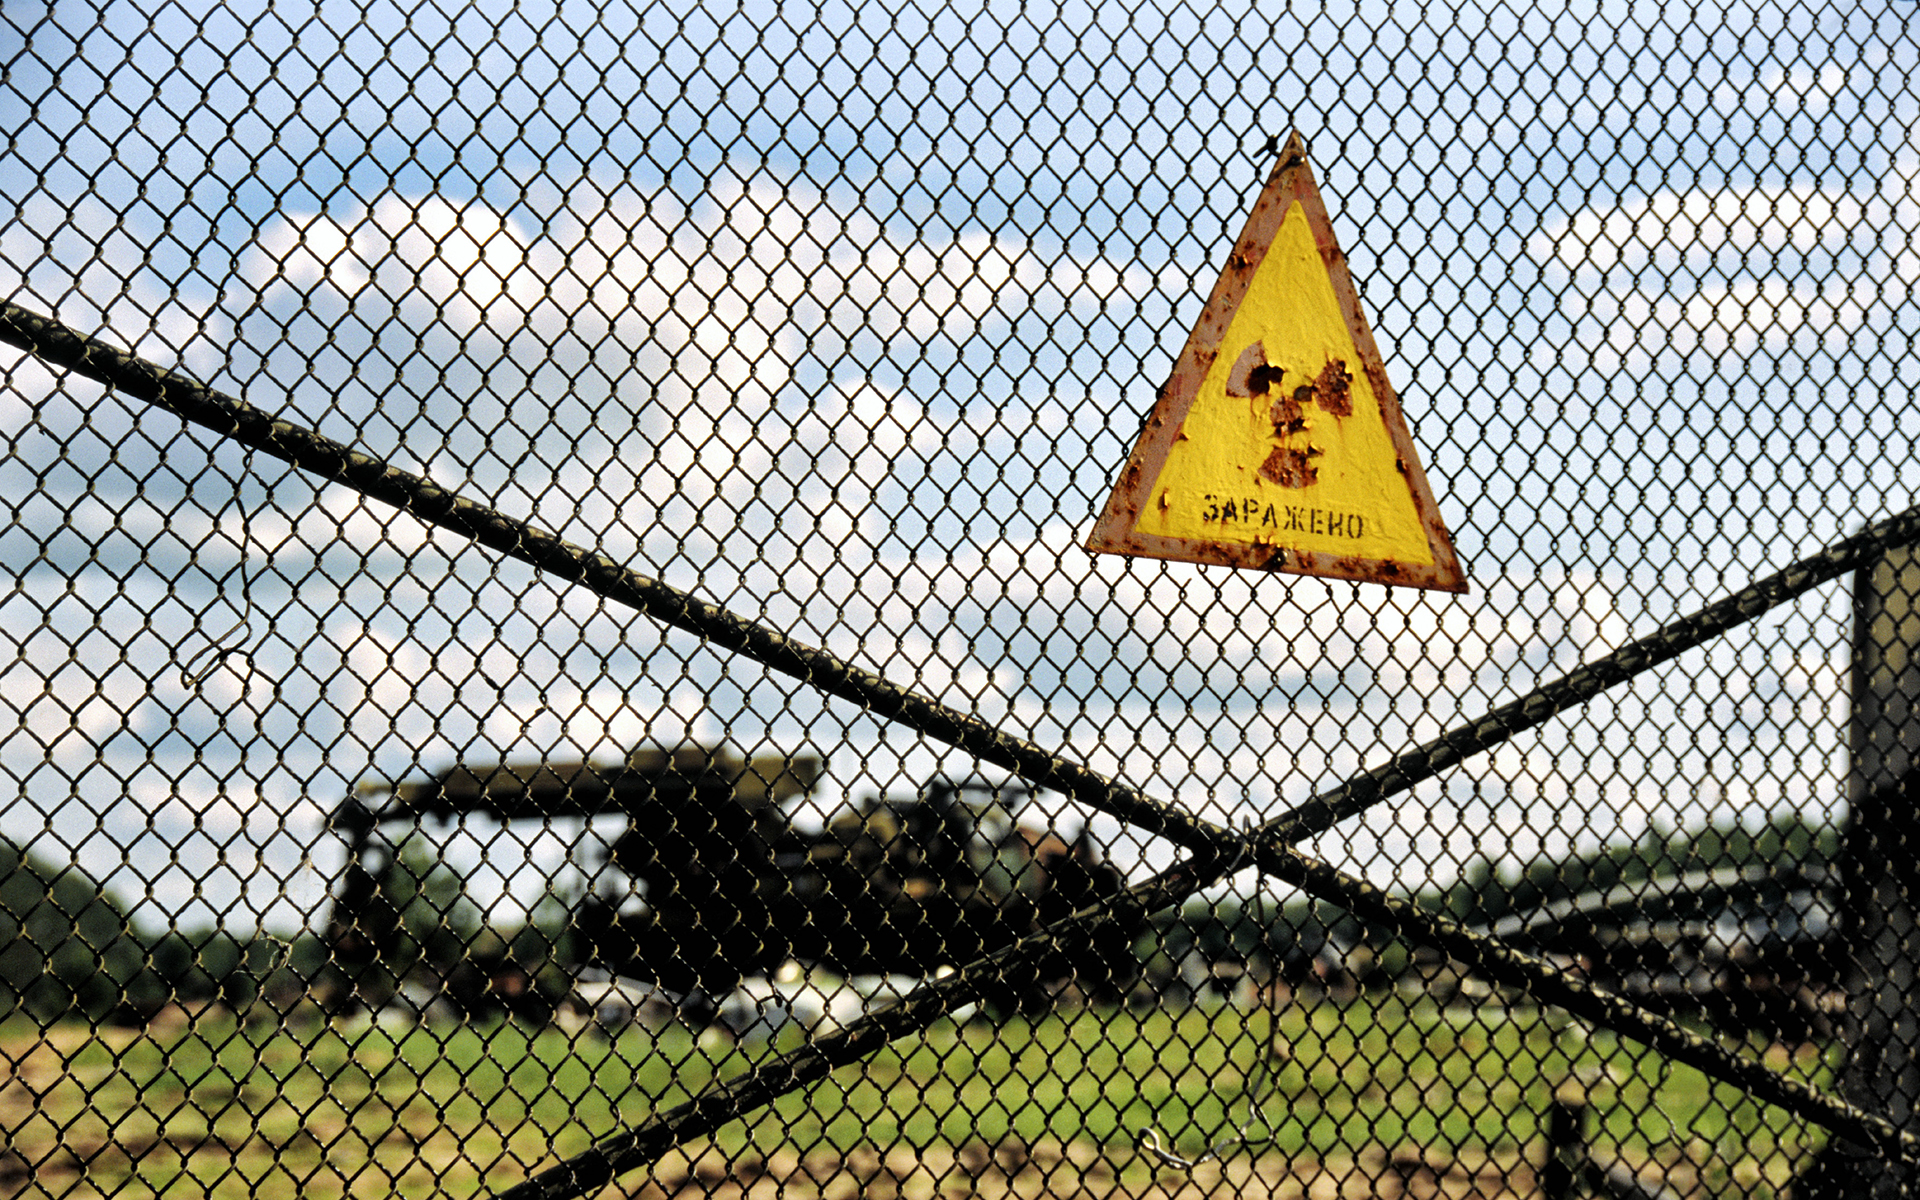 знаки, Чернобыль, радиоактивный, Украина, кладбище, цепи ссылка забор - обои на рабочий стол